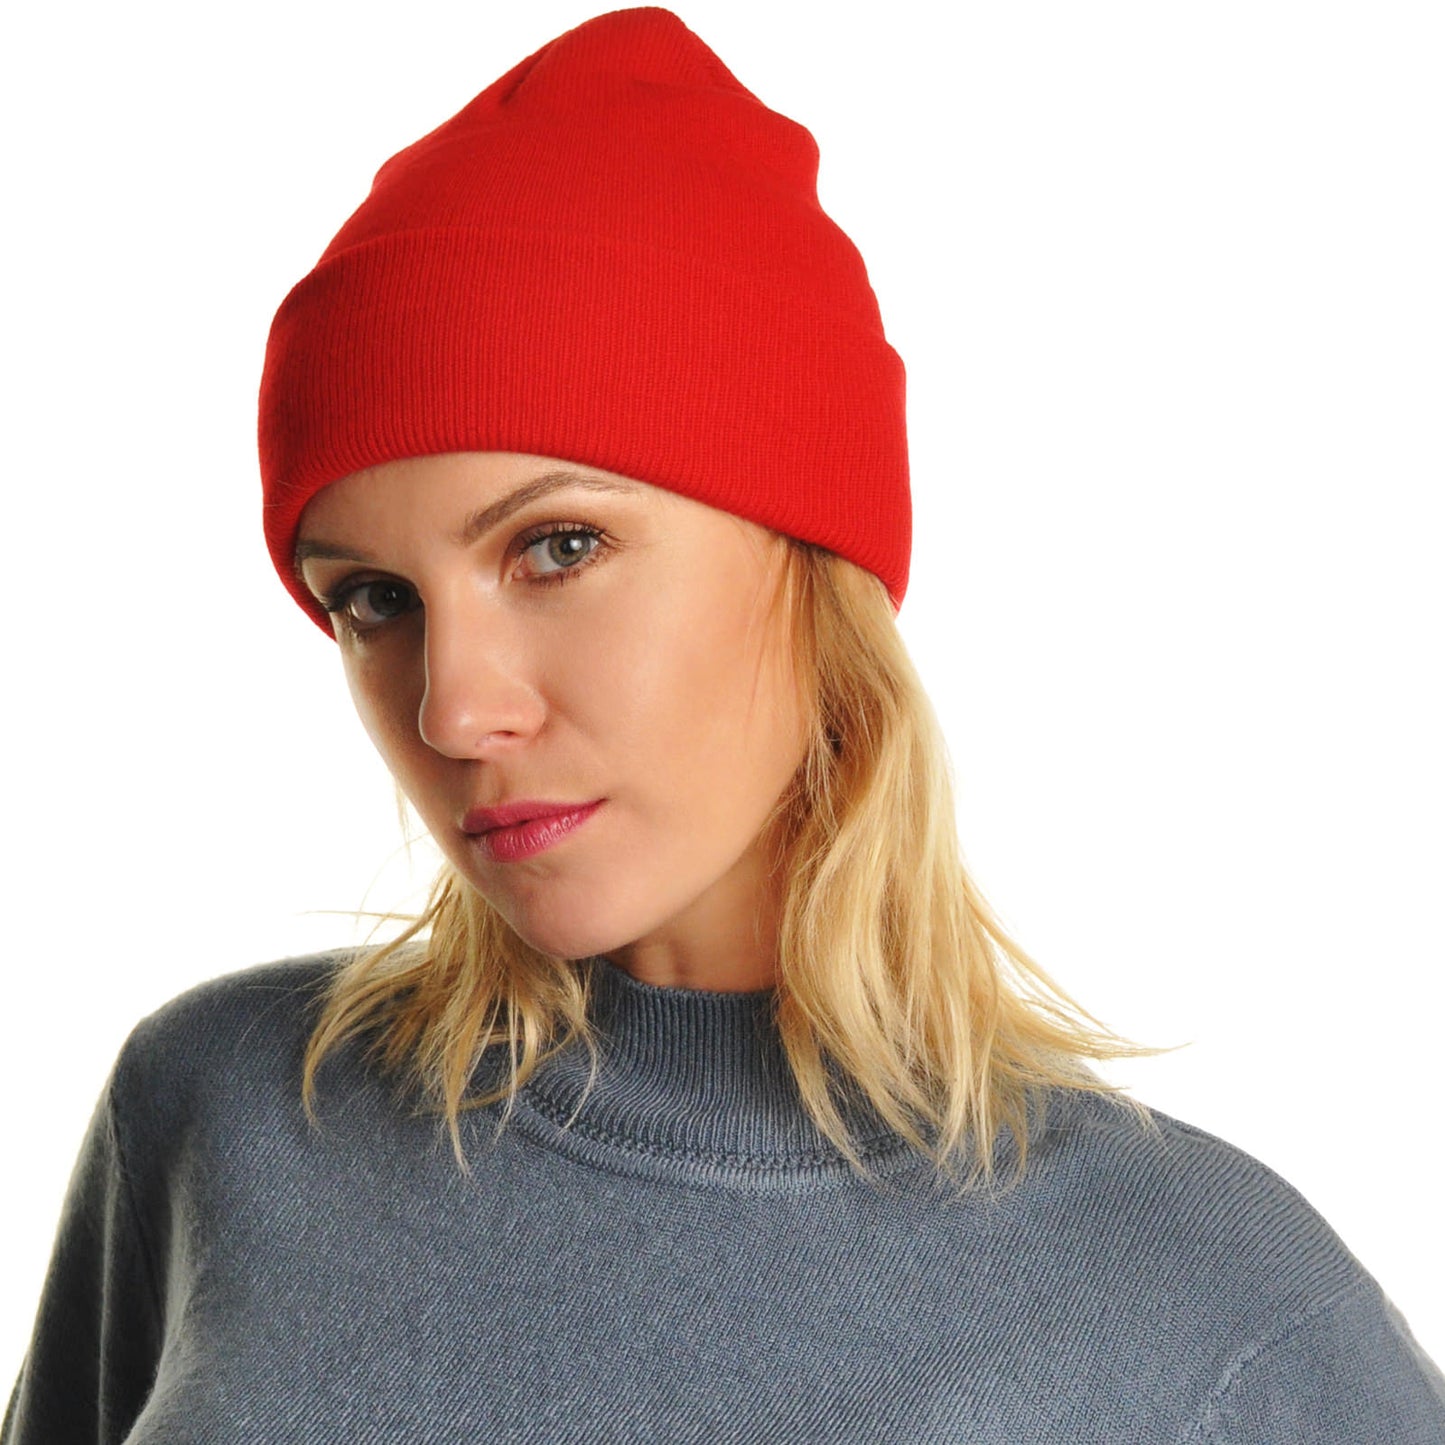 Knit Basic Color Unisex Adult Beanies Cap Hat (6-Pack)